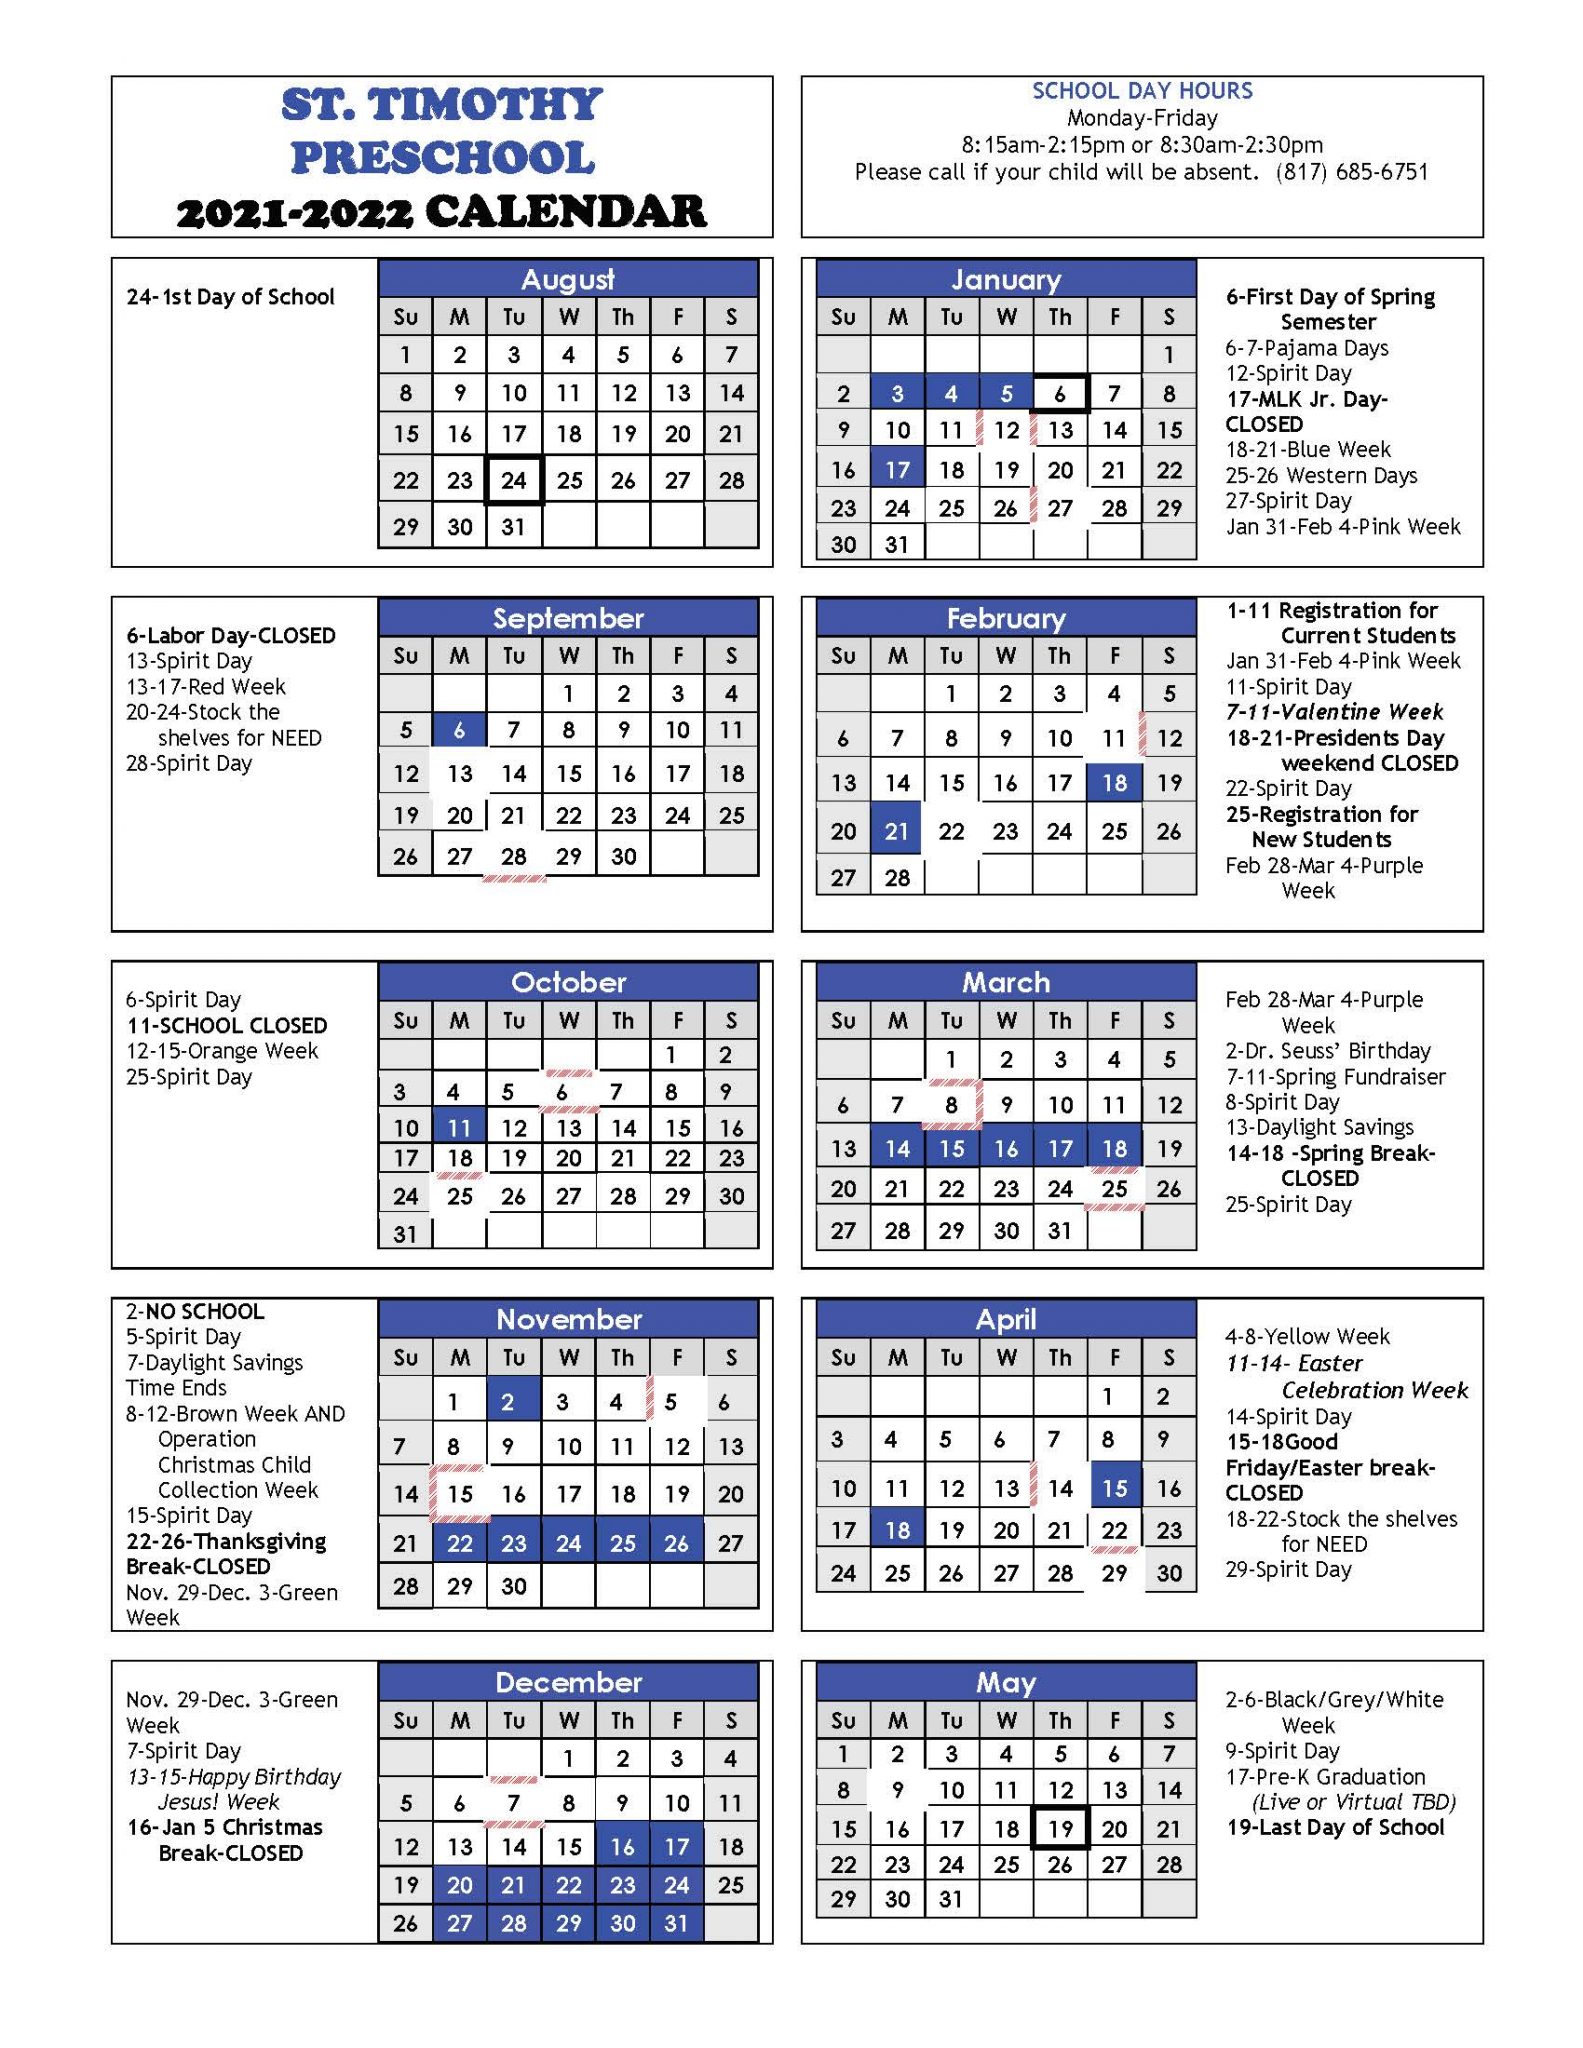 tcc-academic-calendar-2022-customize-and-print